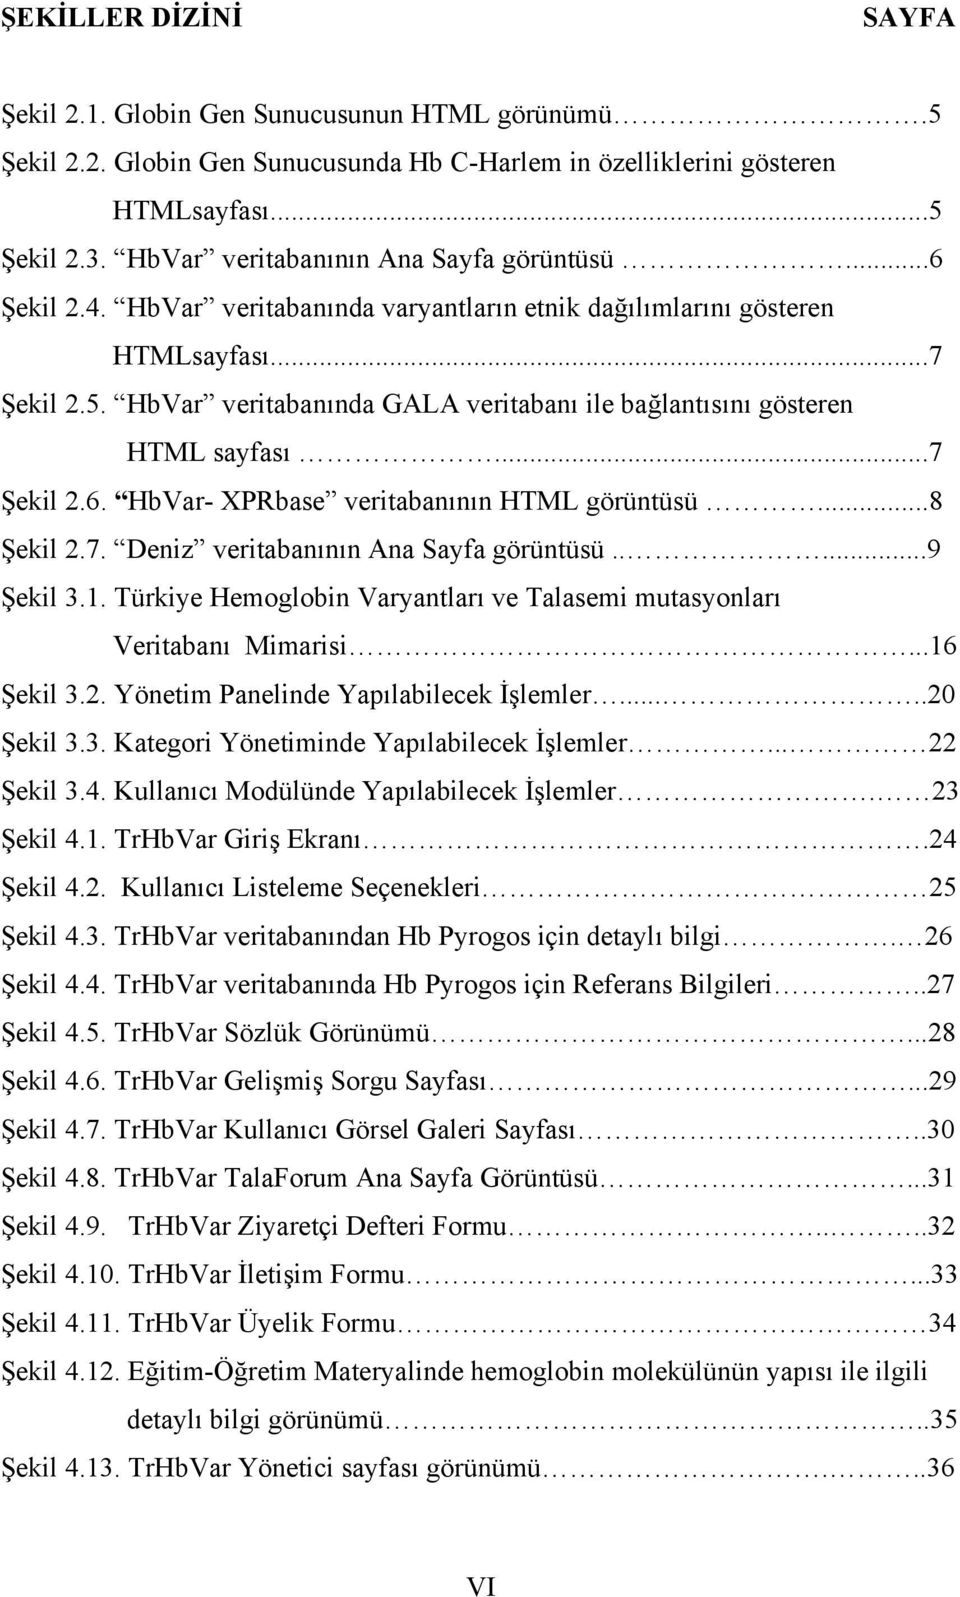 HbVar veritabanında GALA veritabanı ile bağlantısını gösteren HTML sayfası...7 Şekil 2.6. HbVar- XPRbase veritabanının HTML görüntüsü...8 Şekil 2.7. Deniz veritabanının Ana Sayfa görüntüsü.....9 Şekil 3.